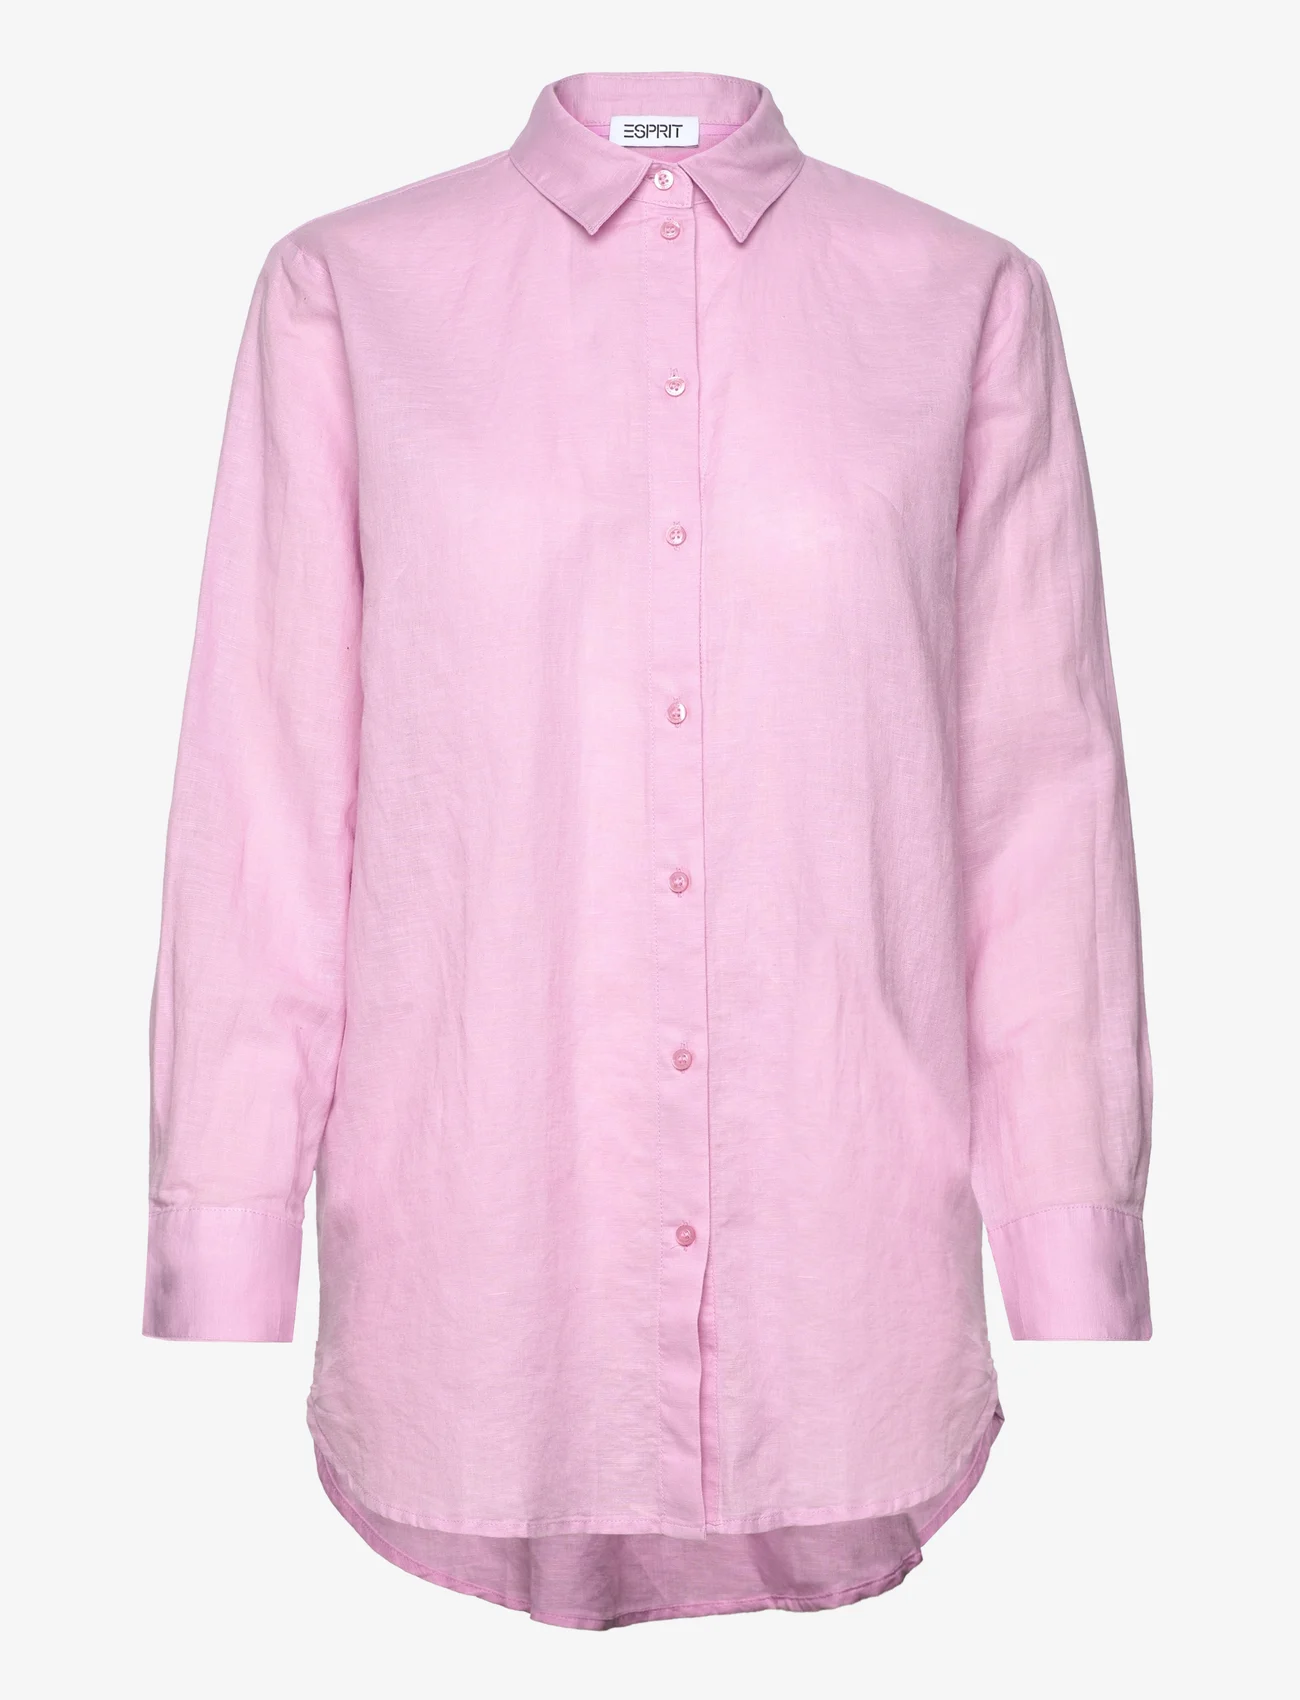 Esprit Casual - Blouses woven - leinenhemden - pink - 0